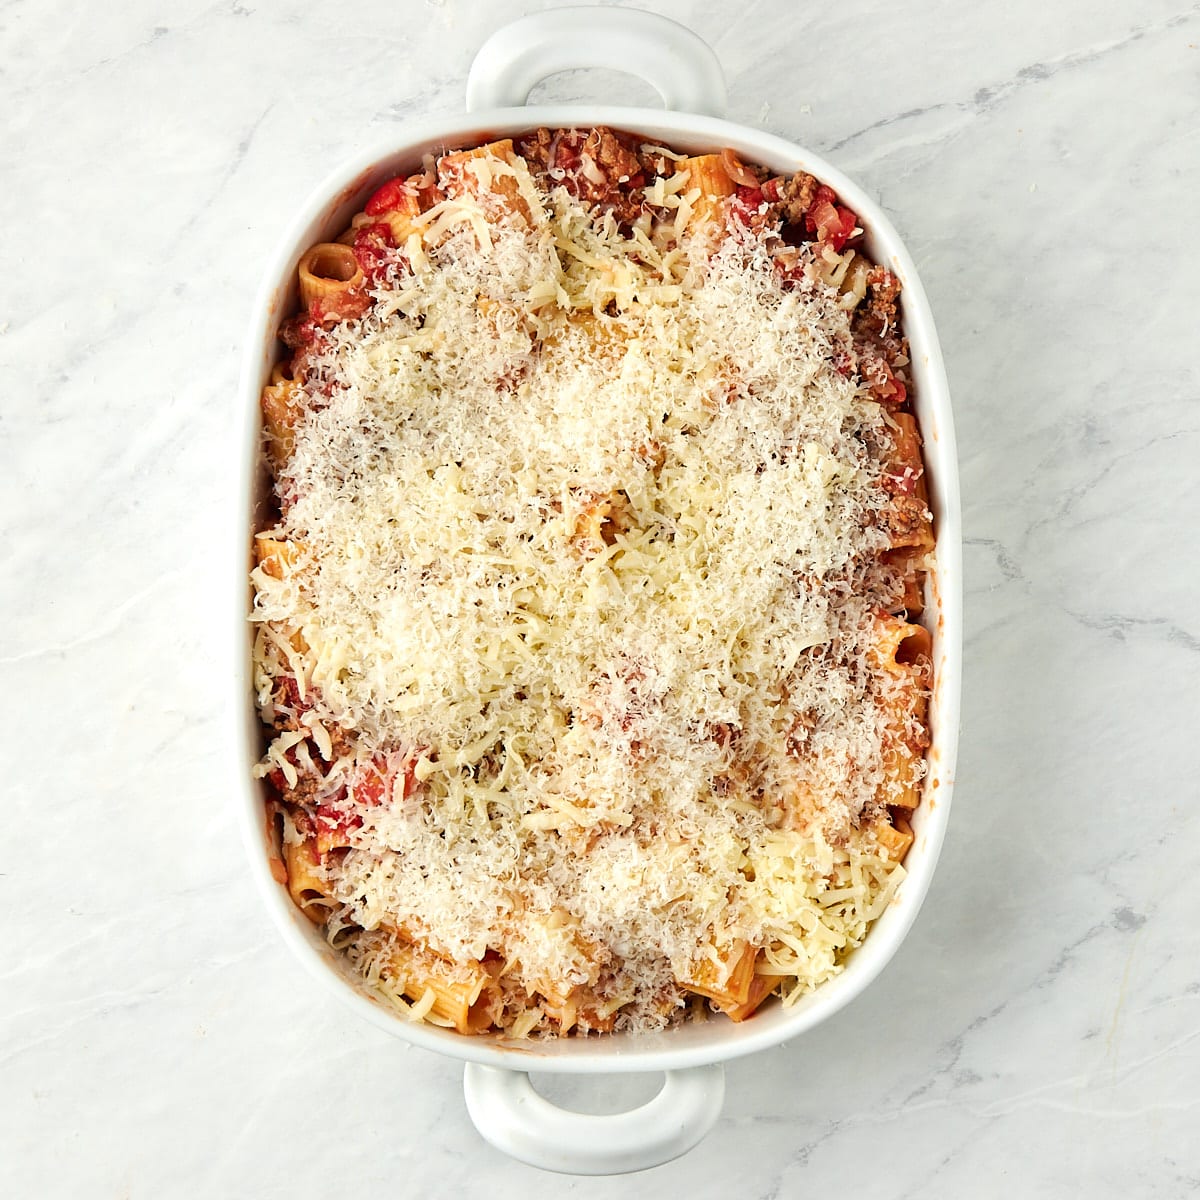 shredded mozzarella and parmigiano reggiano on top of the rigatoni al forno before baking.